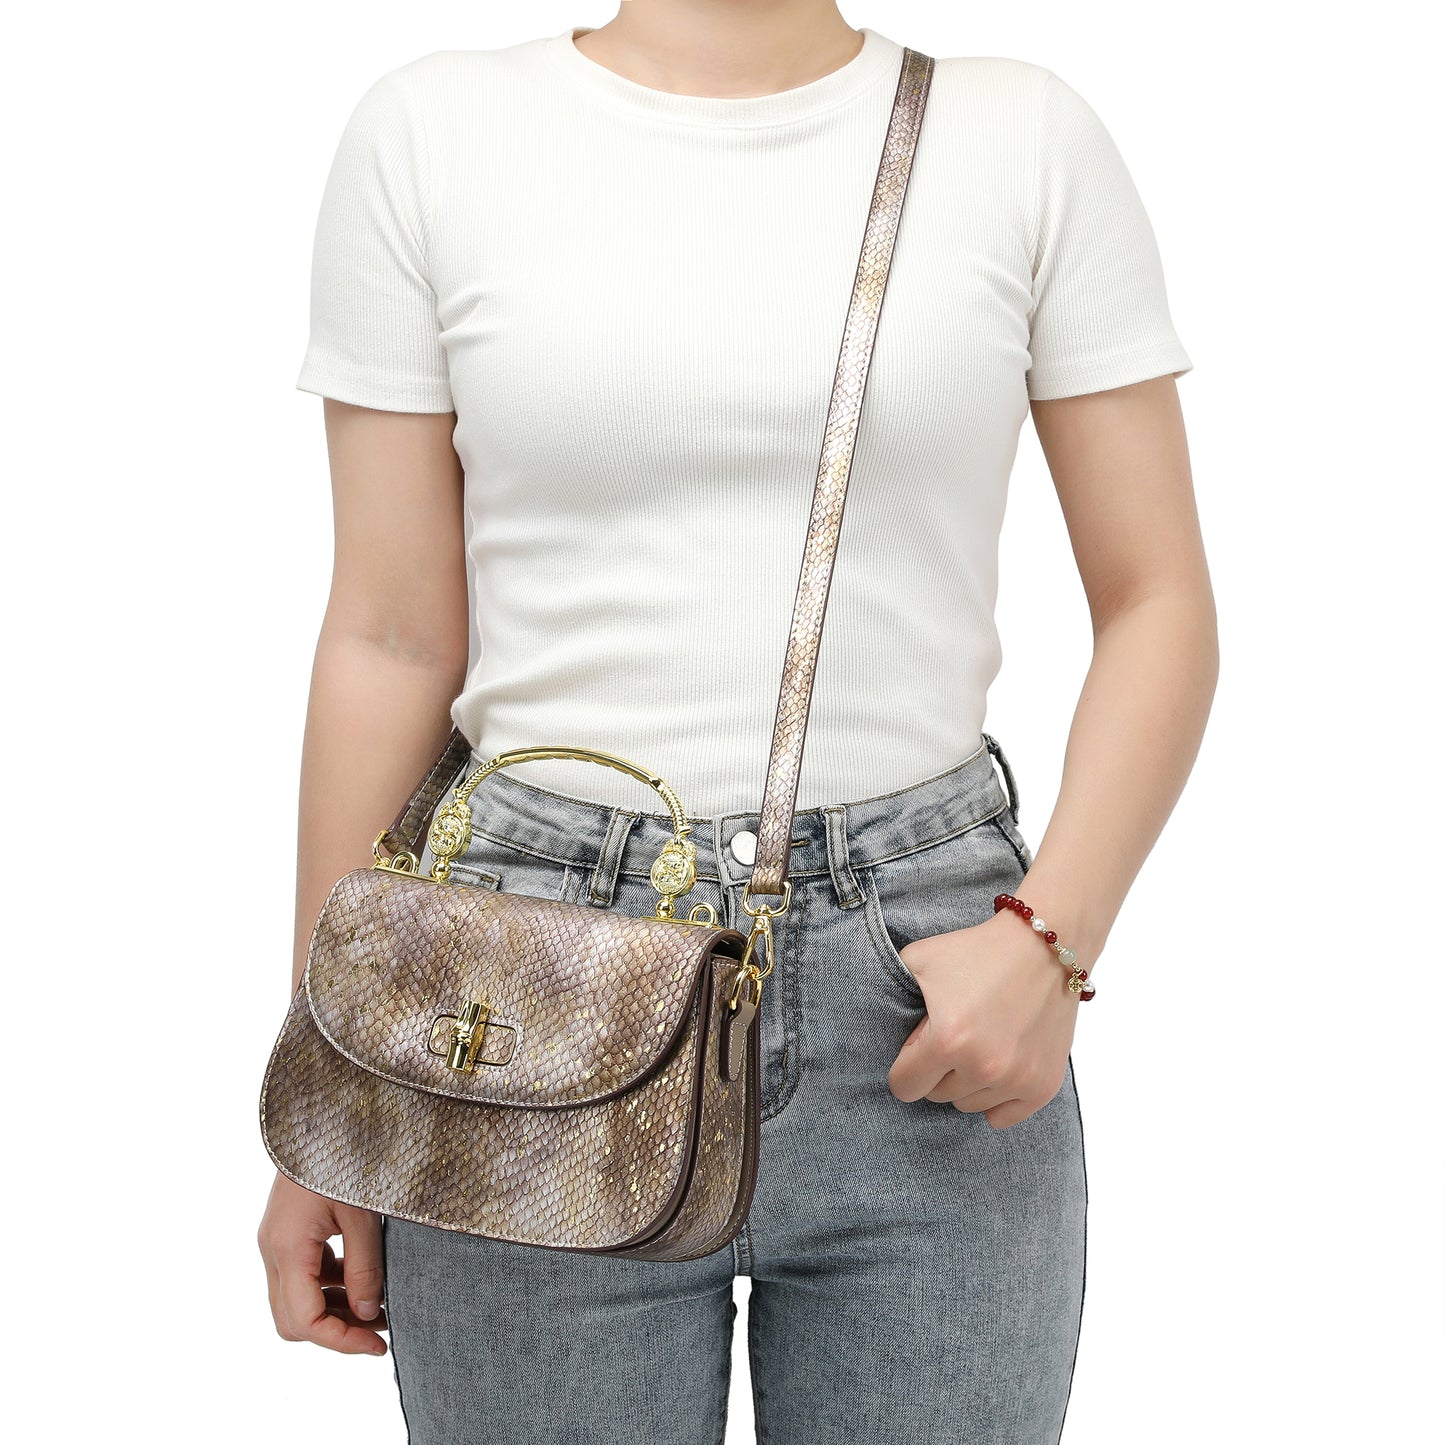 Top-Handle Snakeskin print Leather Satchel/Shoulder Bag # 2600